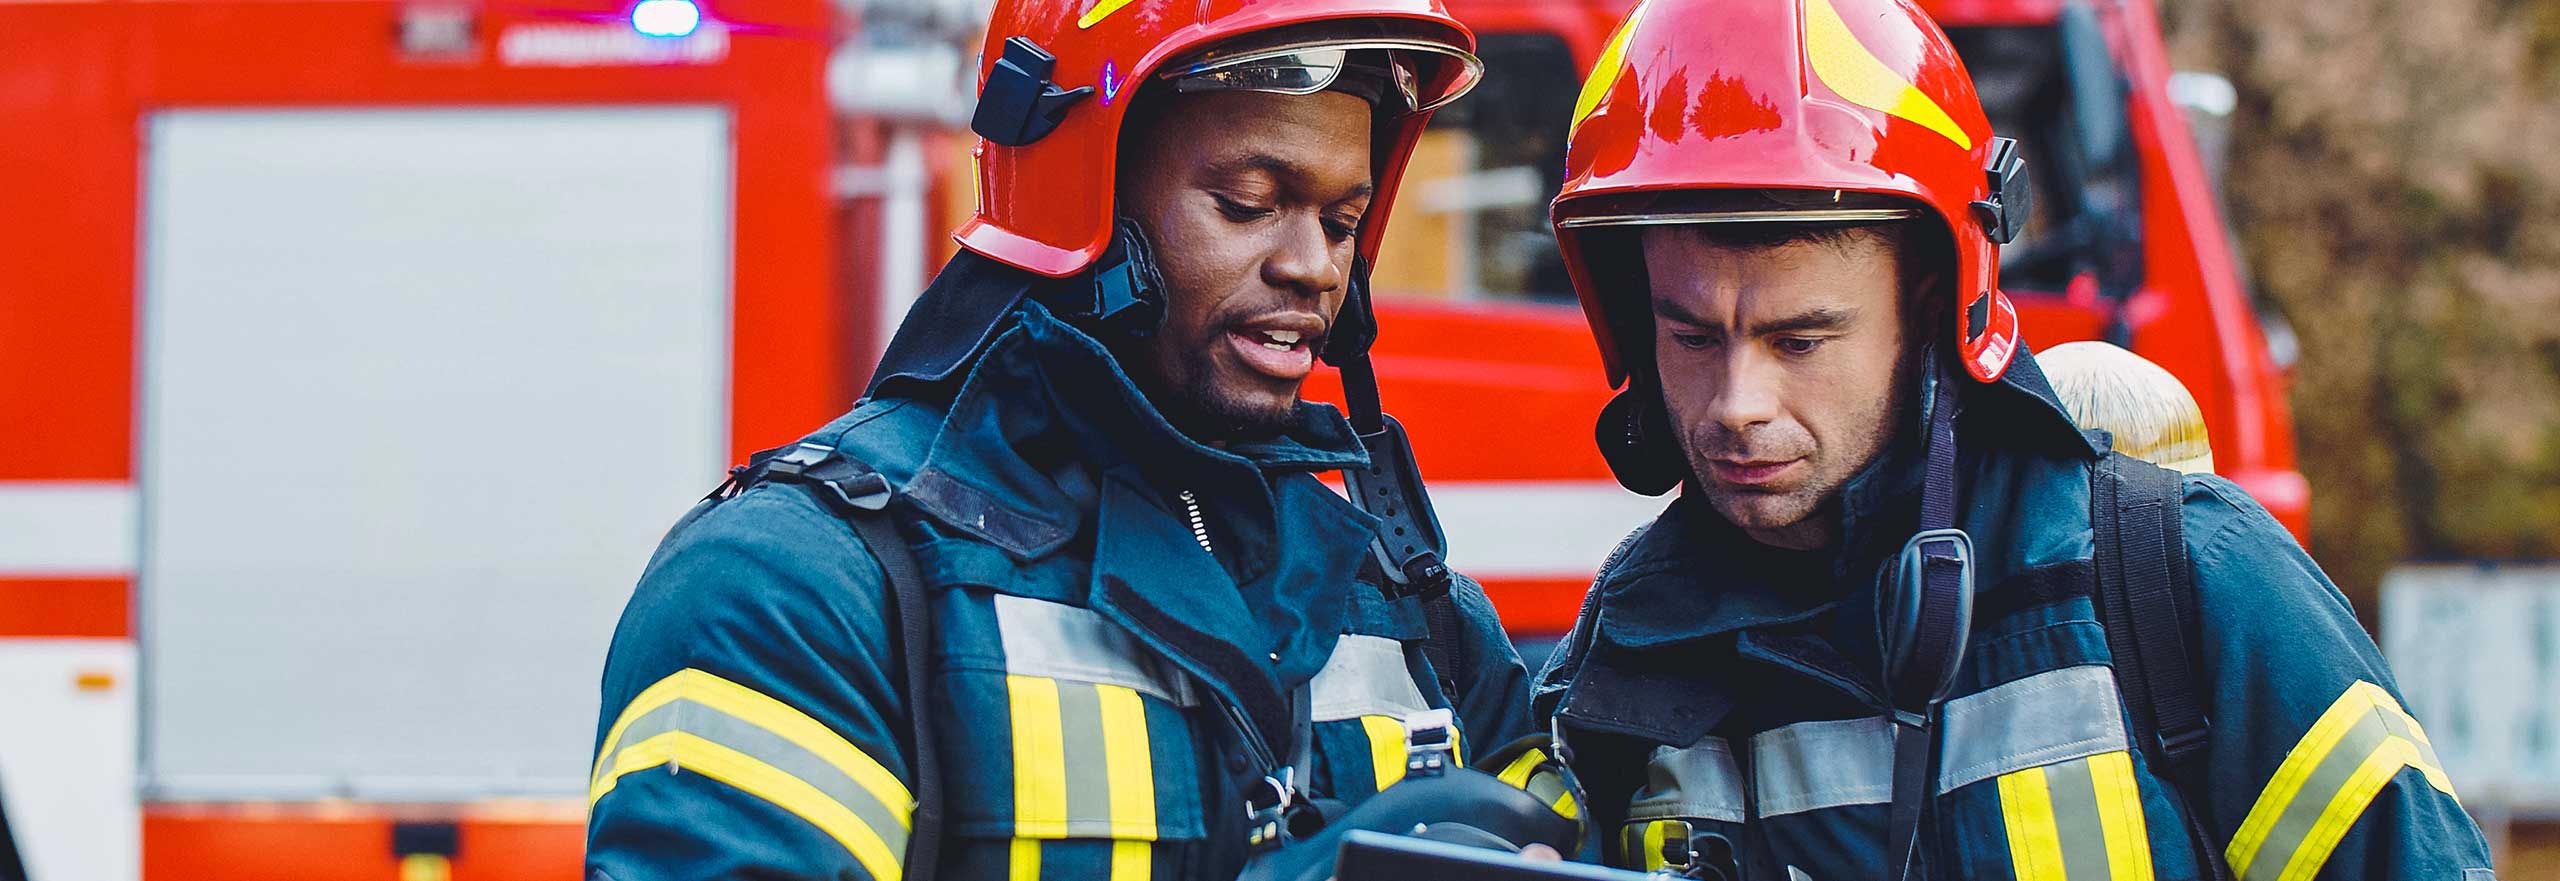 Portrait von zwei Feuerwehrleuten Brandbekämpfung, Feuerwehrmann in Schutzkleidung und Helm mit Tablet im Einsatz.